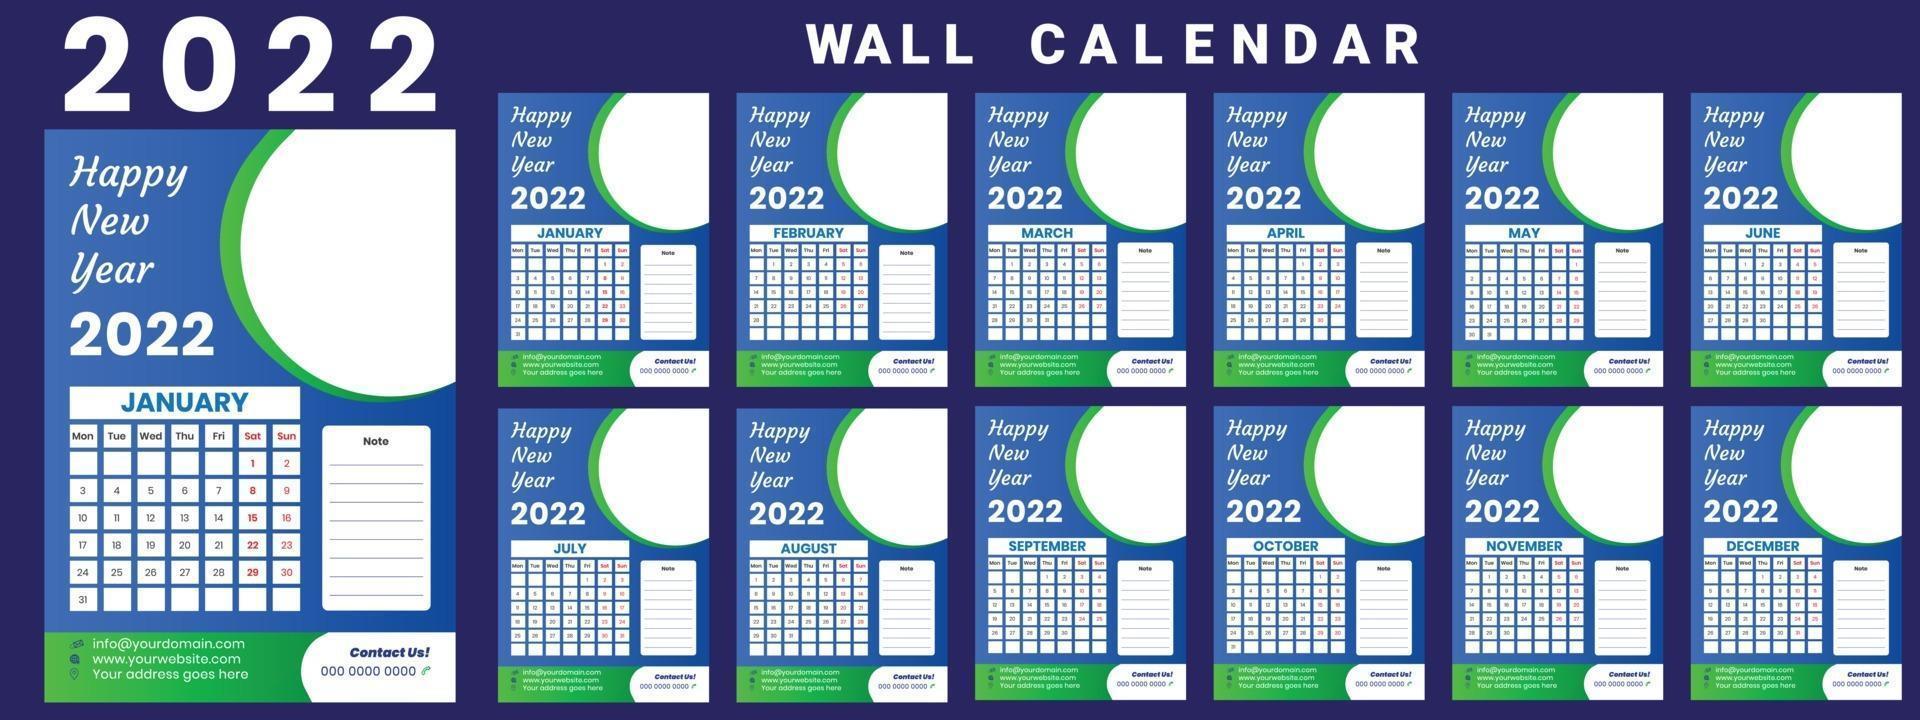 Wandkalender 2022 Wochenstart Montag Corporate Design Vorlage Vektor